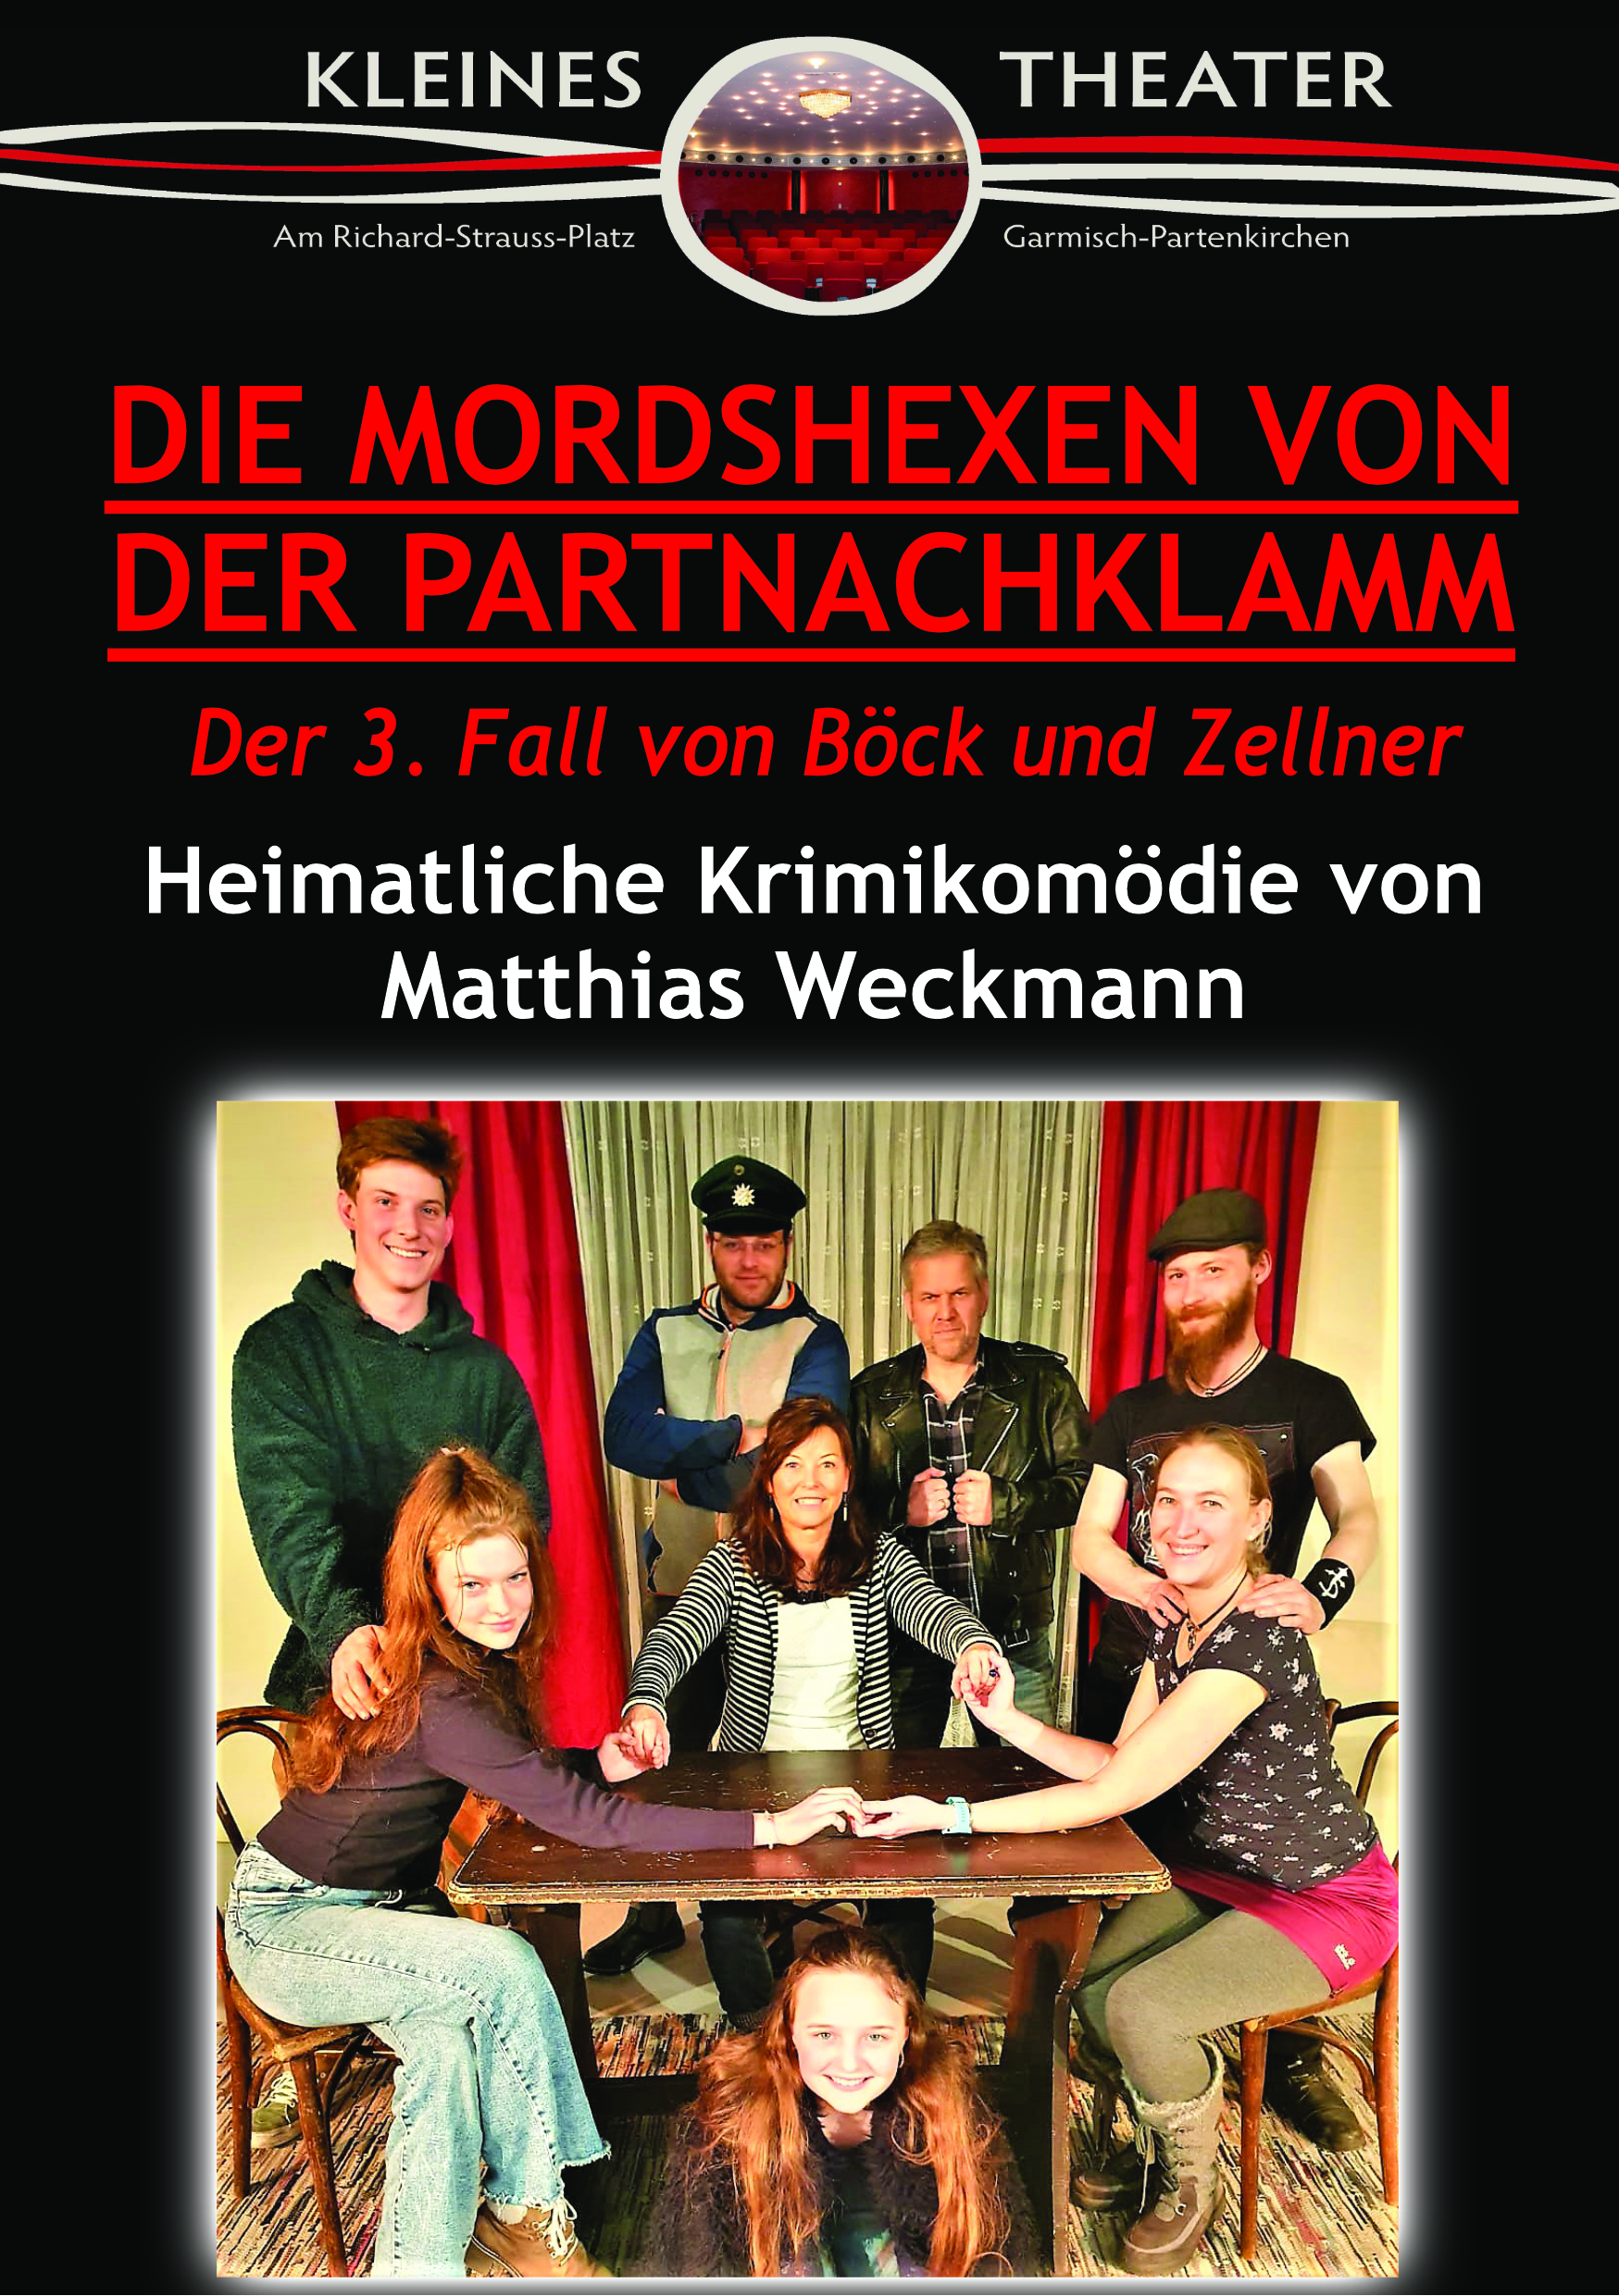 Die Mordshexen von der Partnachklamm (Uraufführung!)